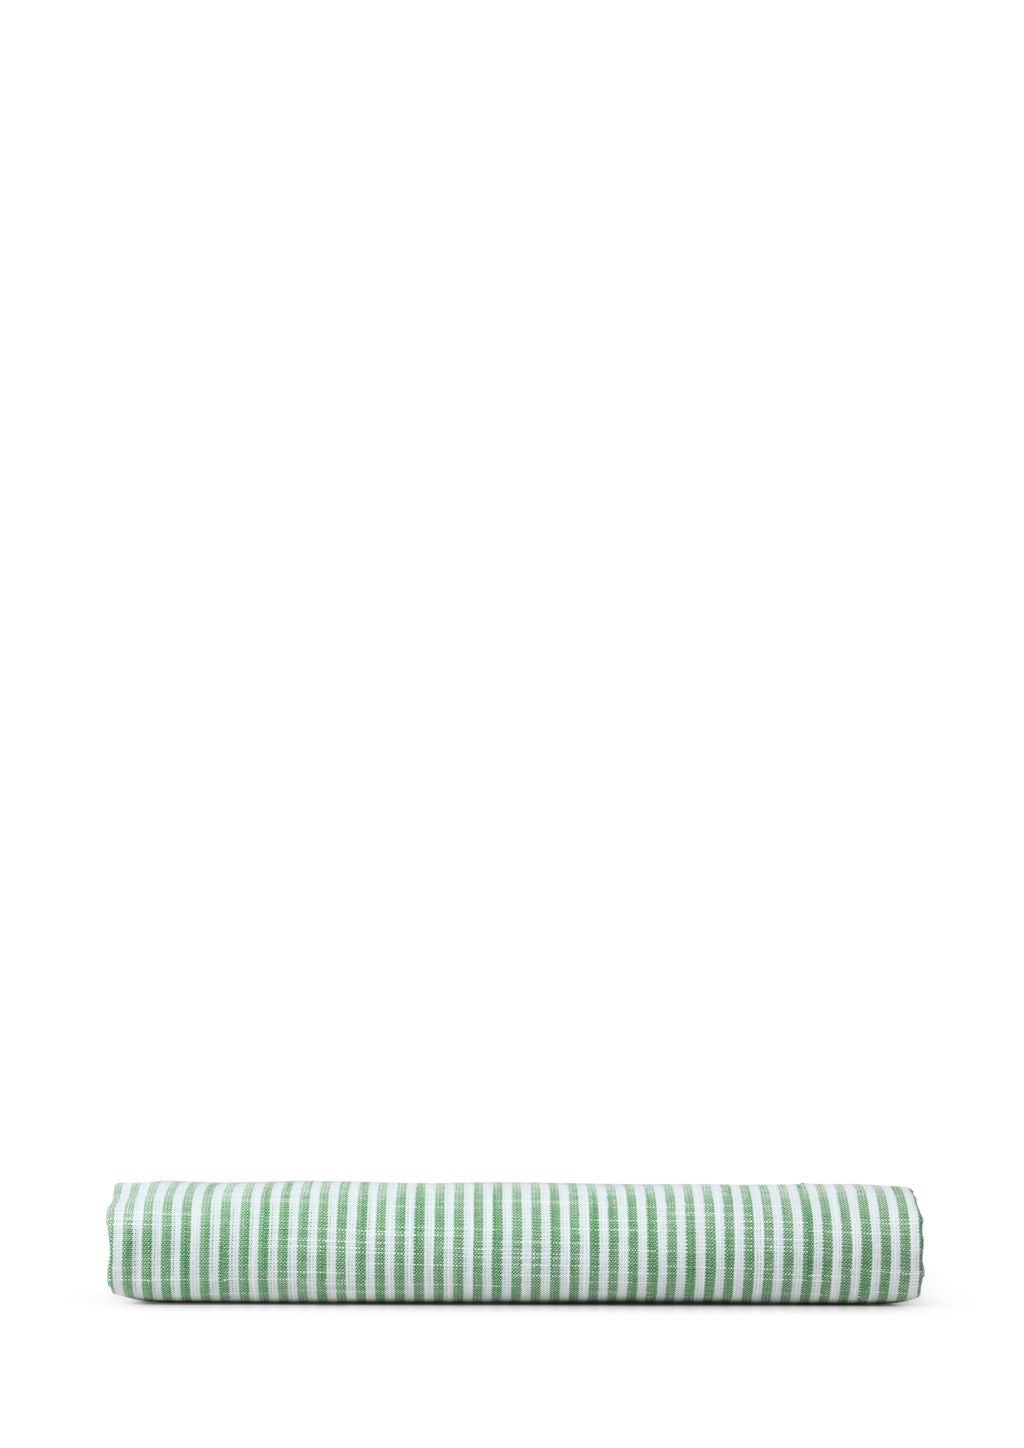 JUNA Monokrome linjer Pushion dækker 63 x60 cm, grøn/hvid